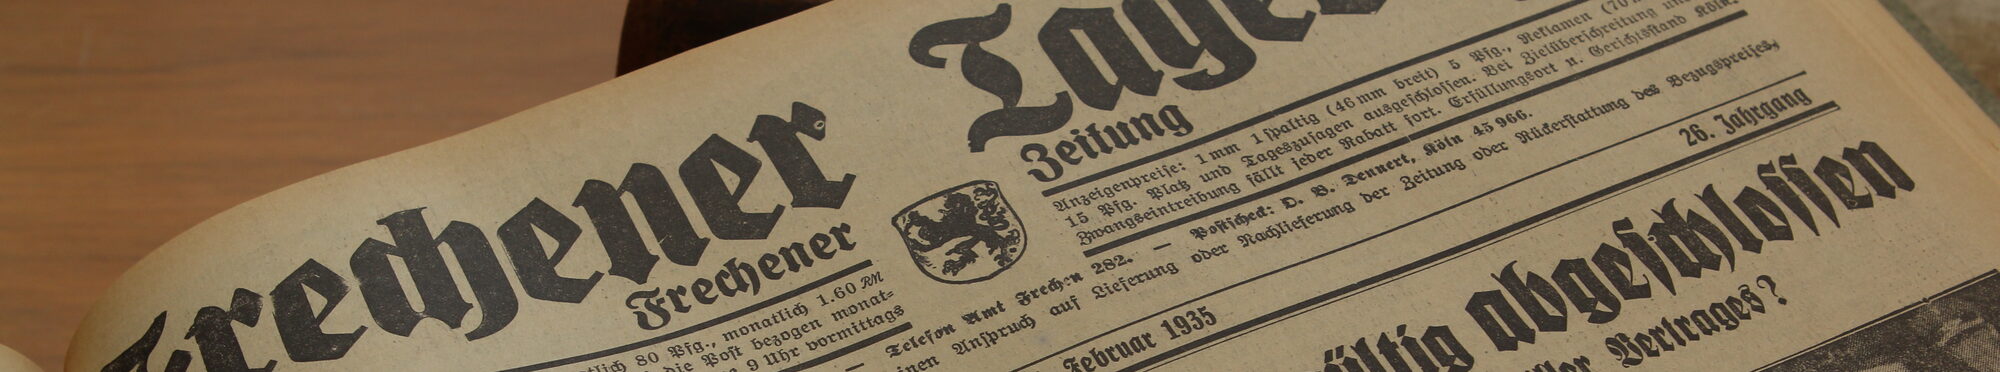 Die Aufnahme zeigt einen alten Zeitungstitel vom "Frechener Tageblatt".